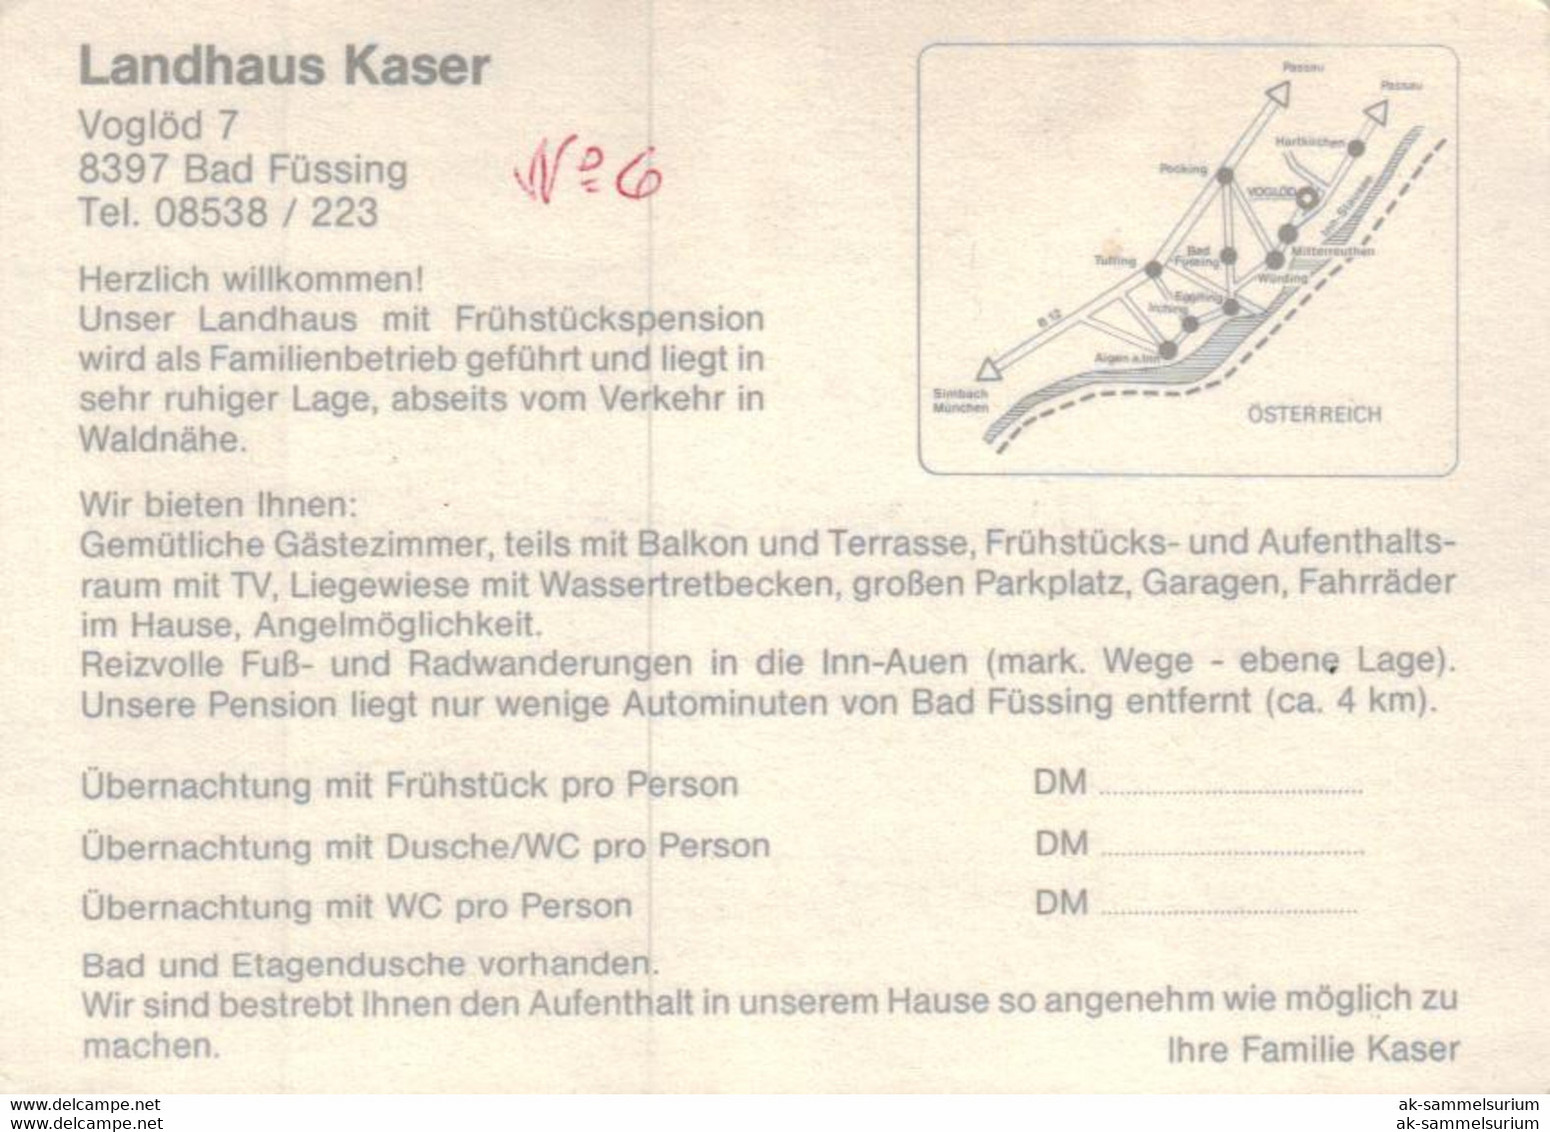 Voglöd / Bad Füssing / Landhaus Kaser (D-A363) - Bad Füssing